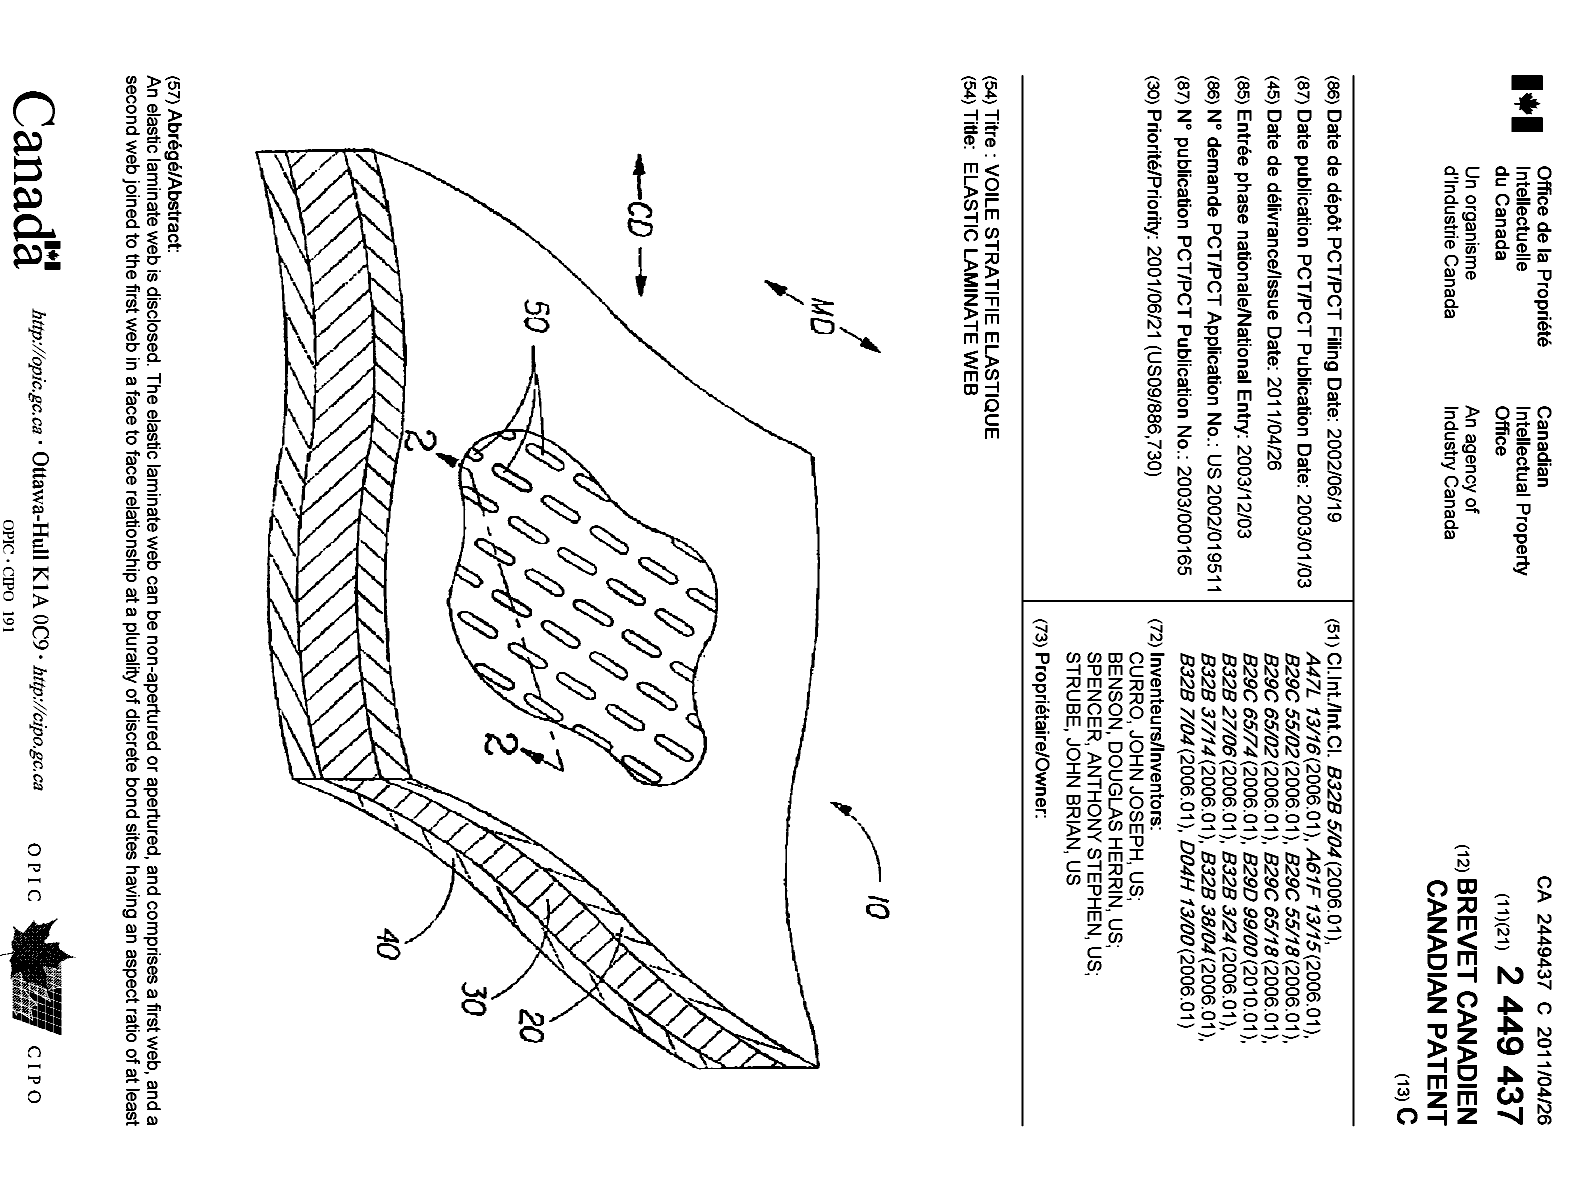 Document de brevet canadien 2449437. Page couverture 20110329. Image 1 de 2